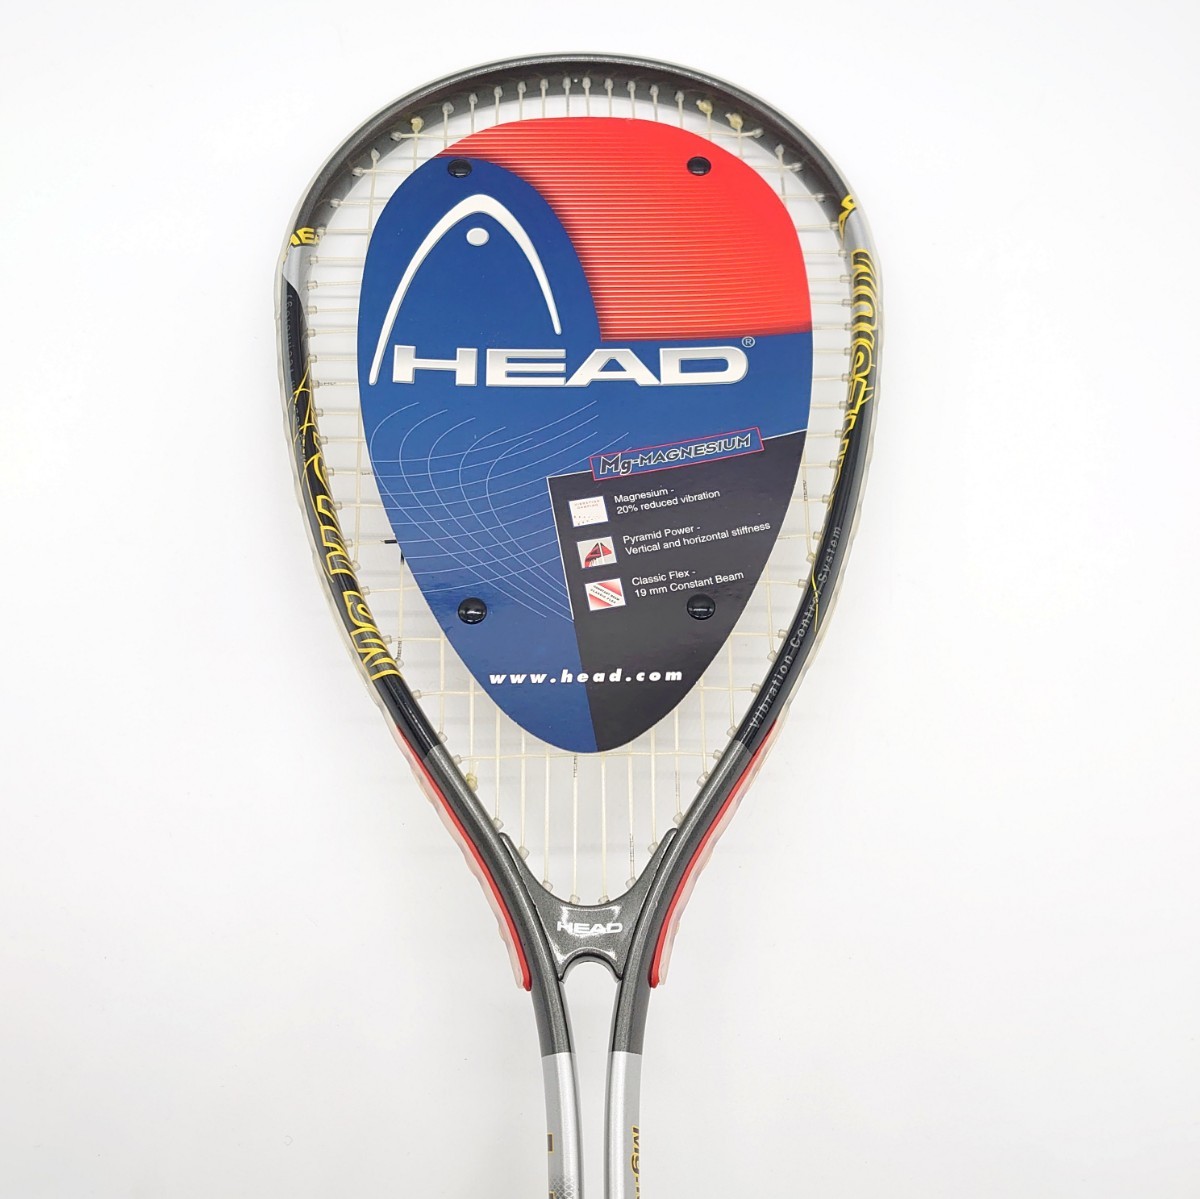 HEAD Mg-MAGNESIUM 3000 ヘッド マグネシウム Squash スカッシュ ラケット インドア 公式 スポーツ ブランド ロゴ 海外モデル tp-23x606